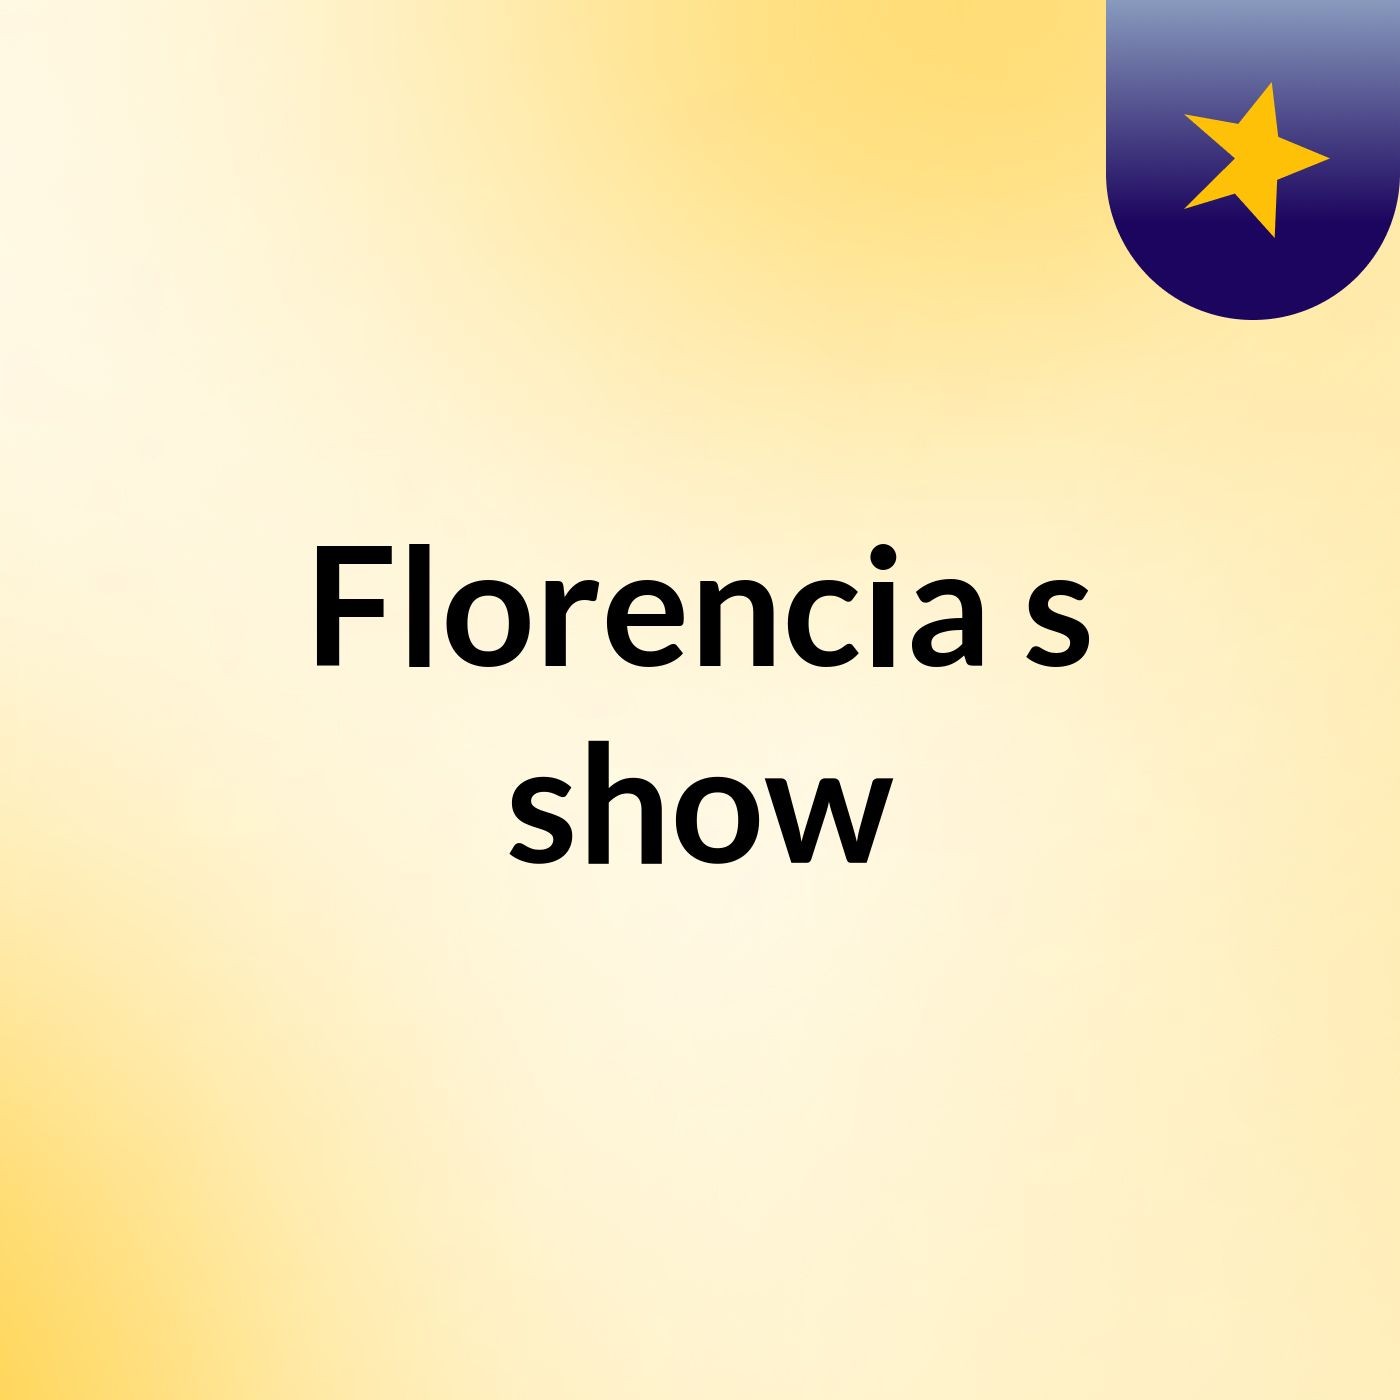 Florencia's show